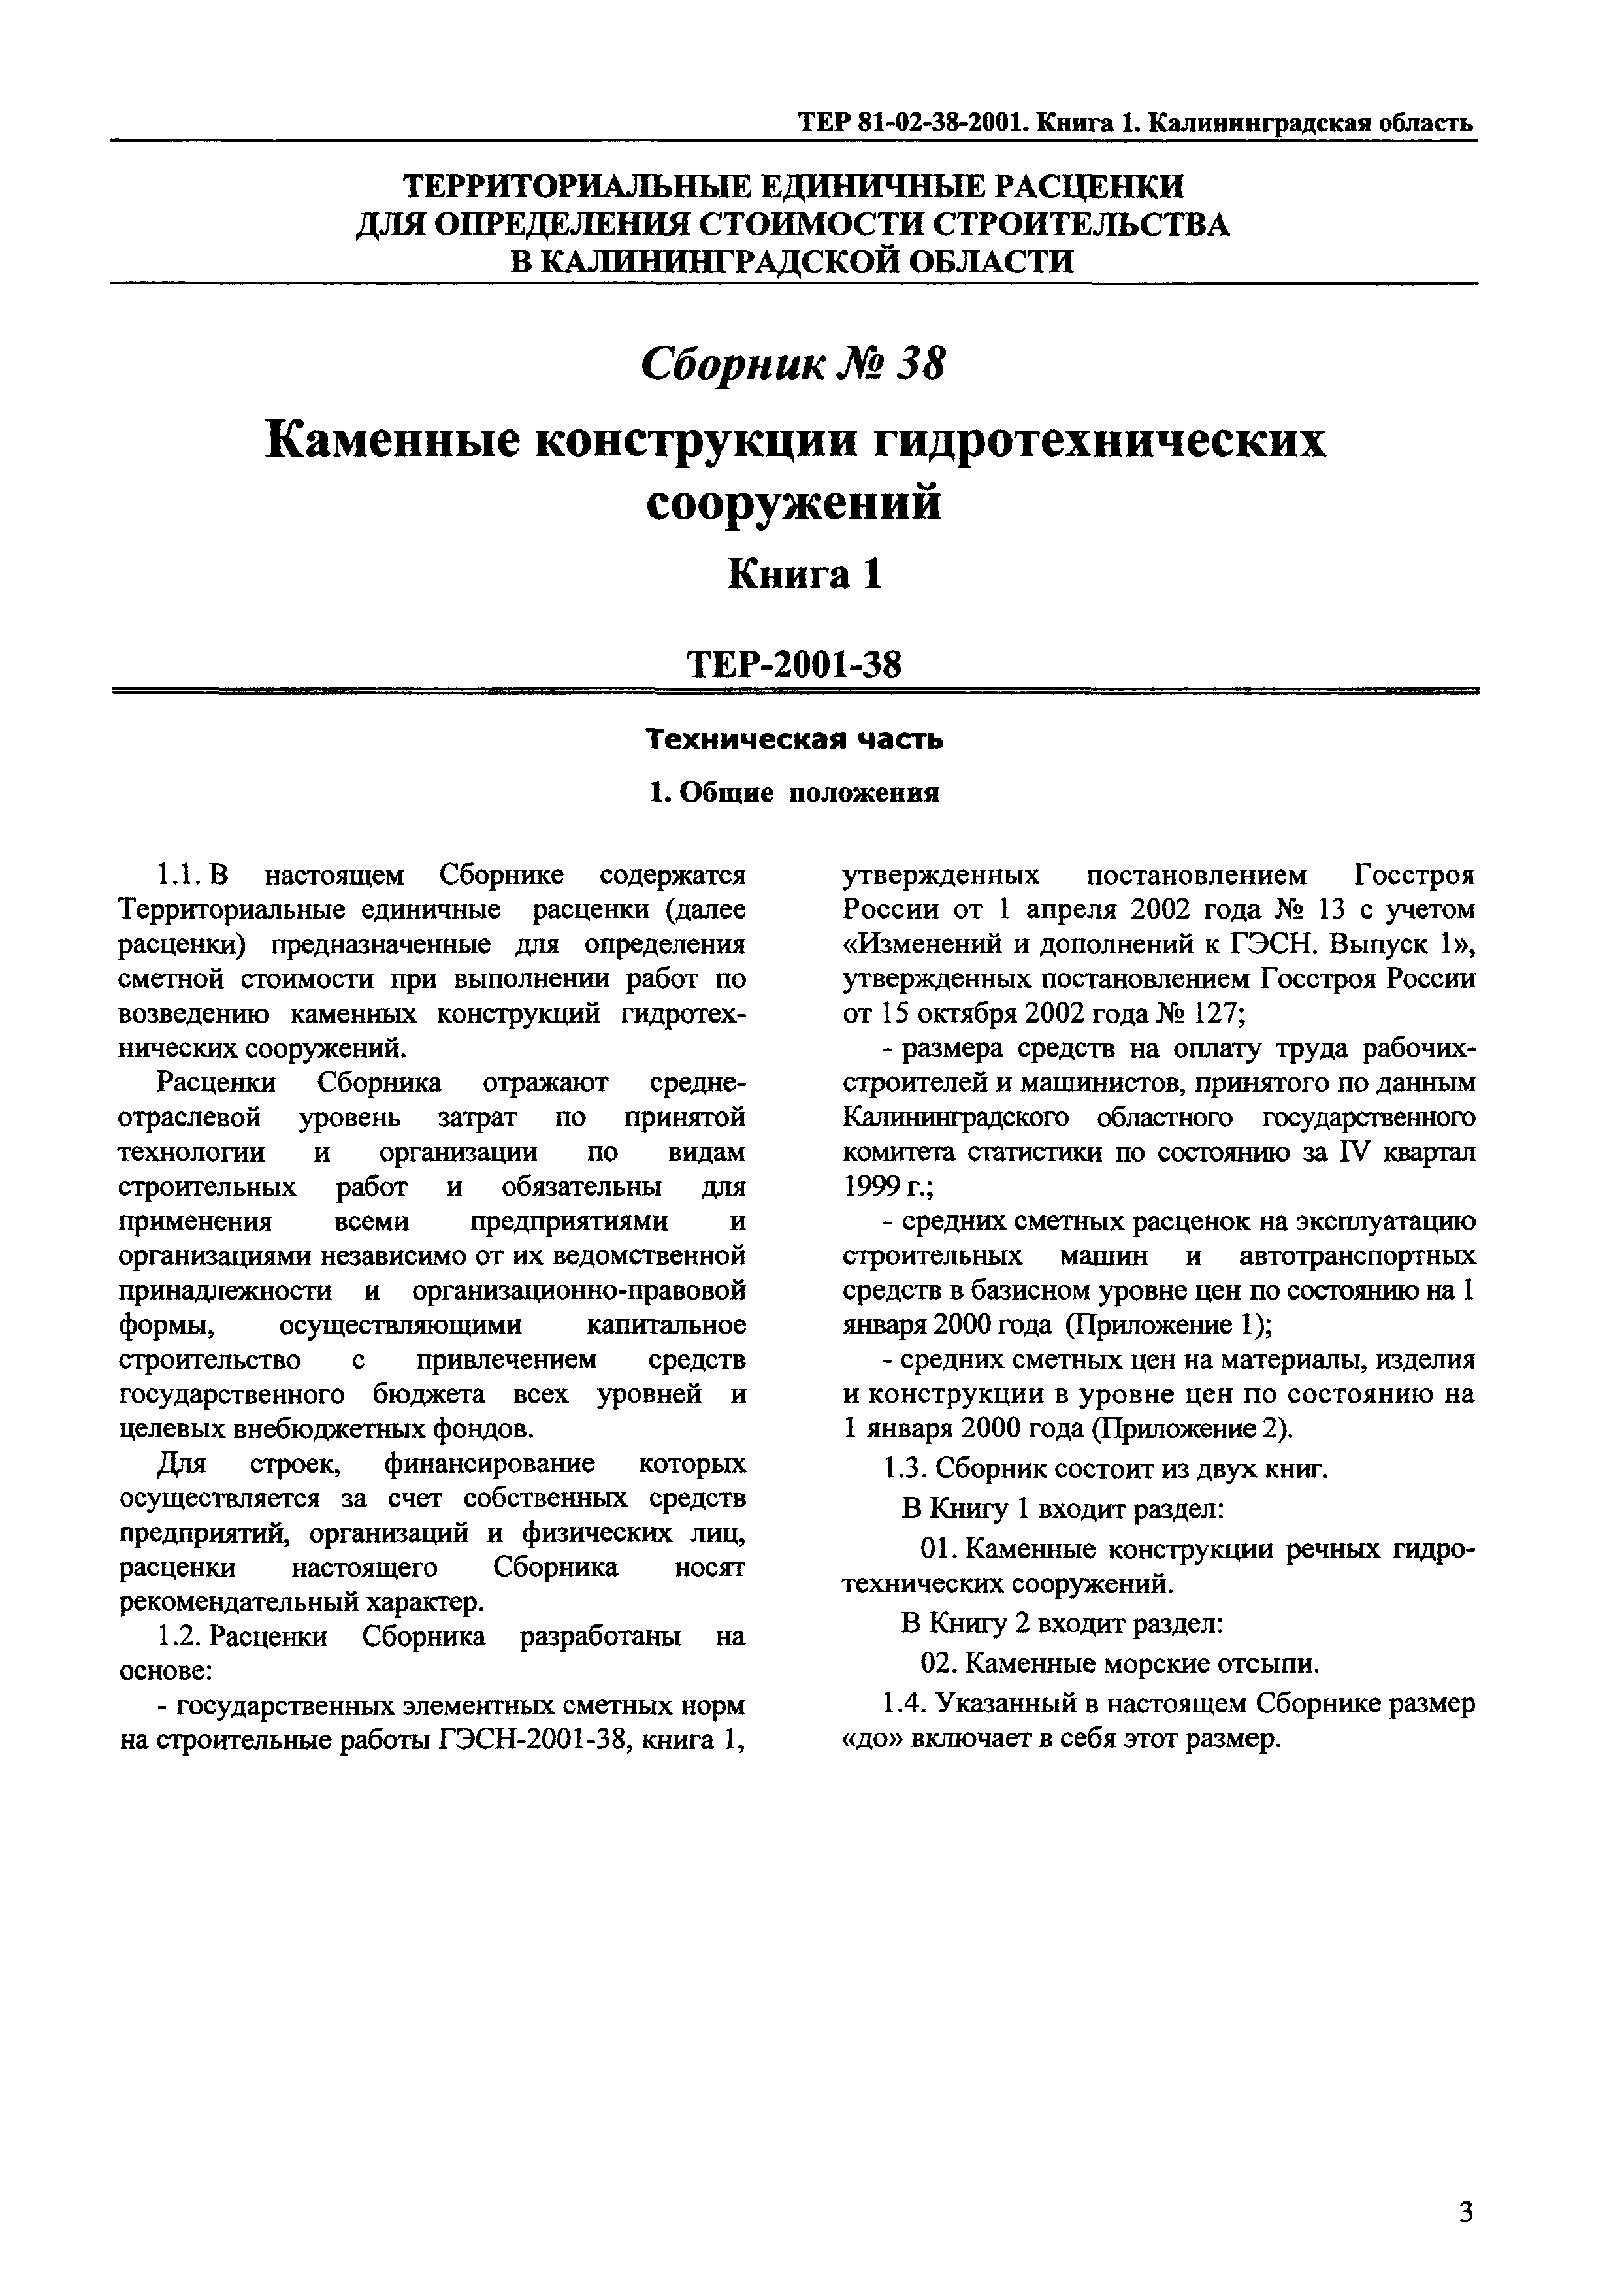 ТЕР Калининградской области 2001-38